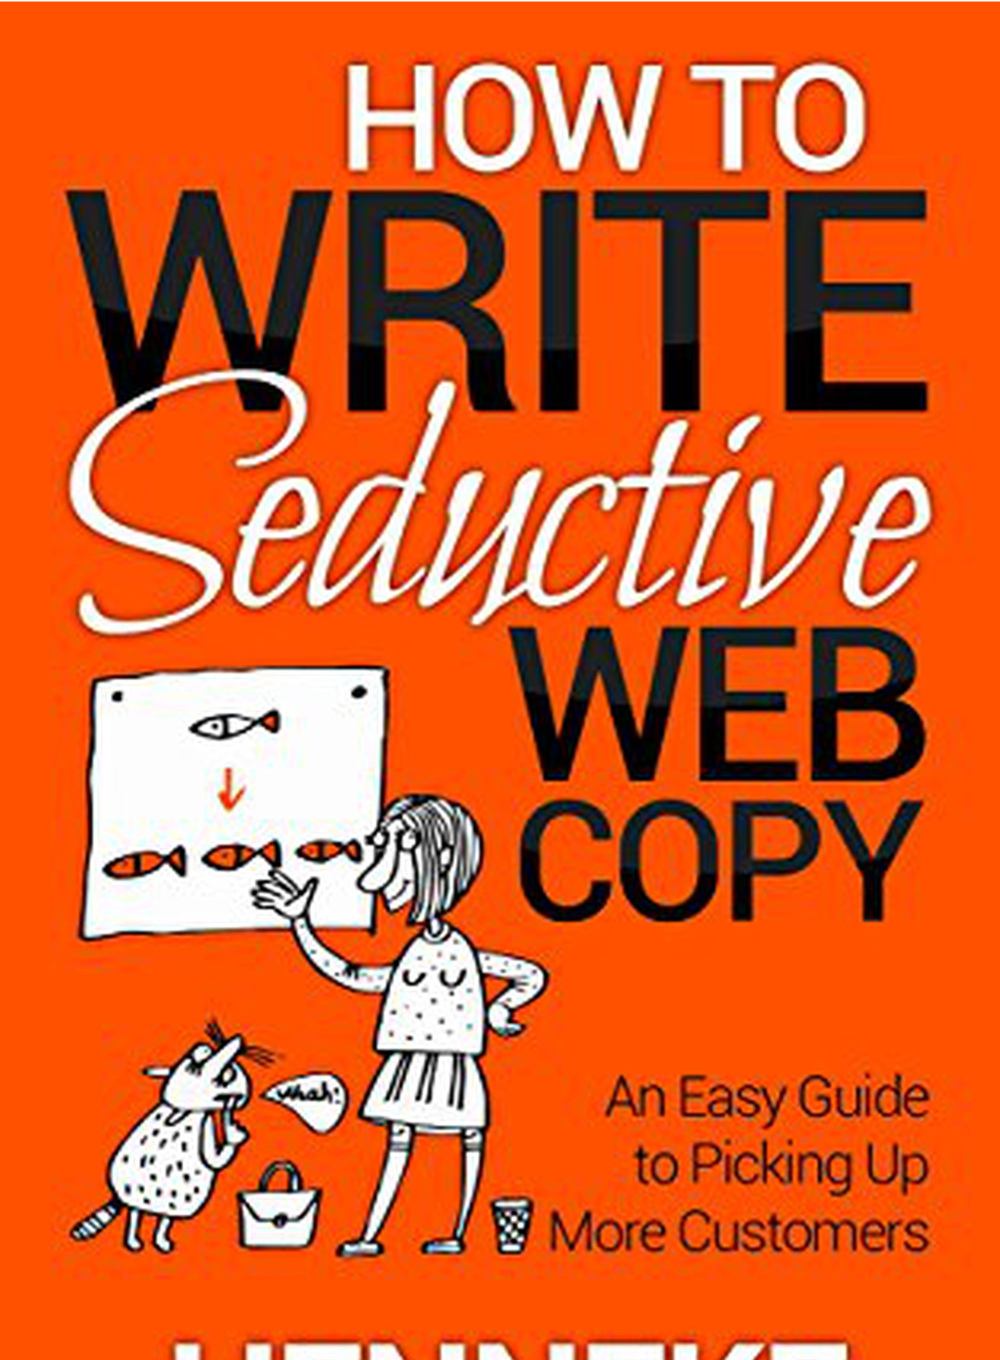 How to write Seductive Web Copy